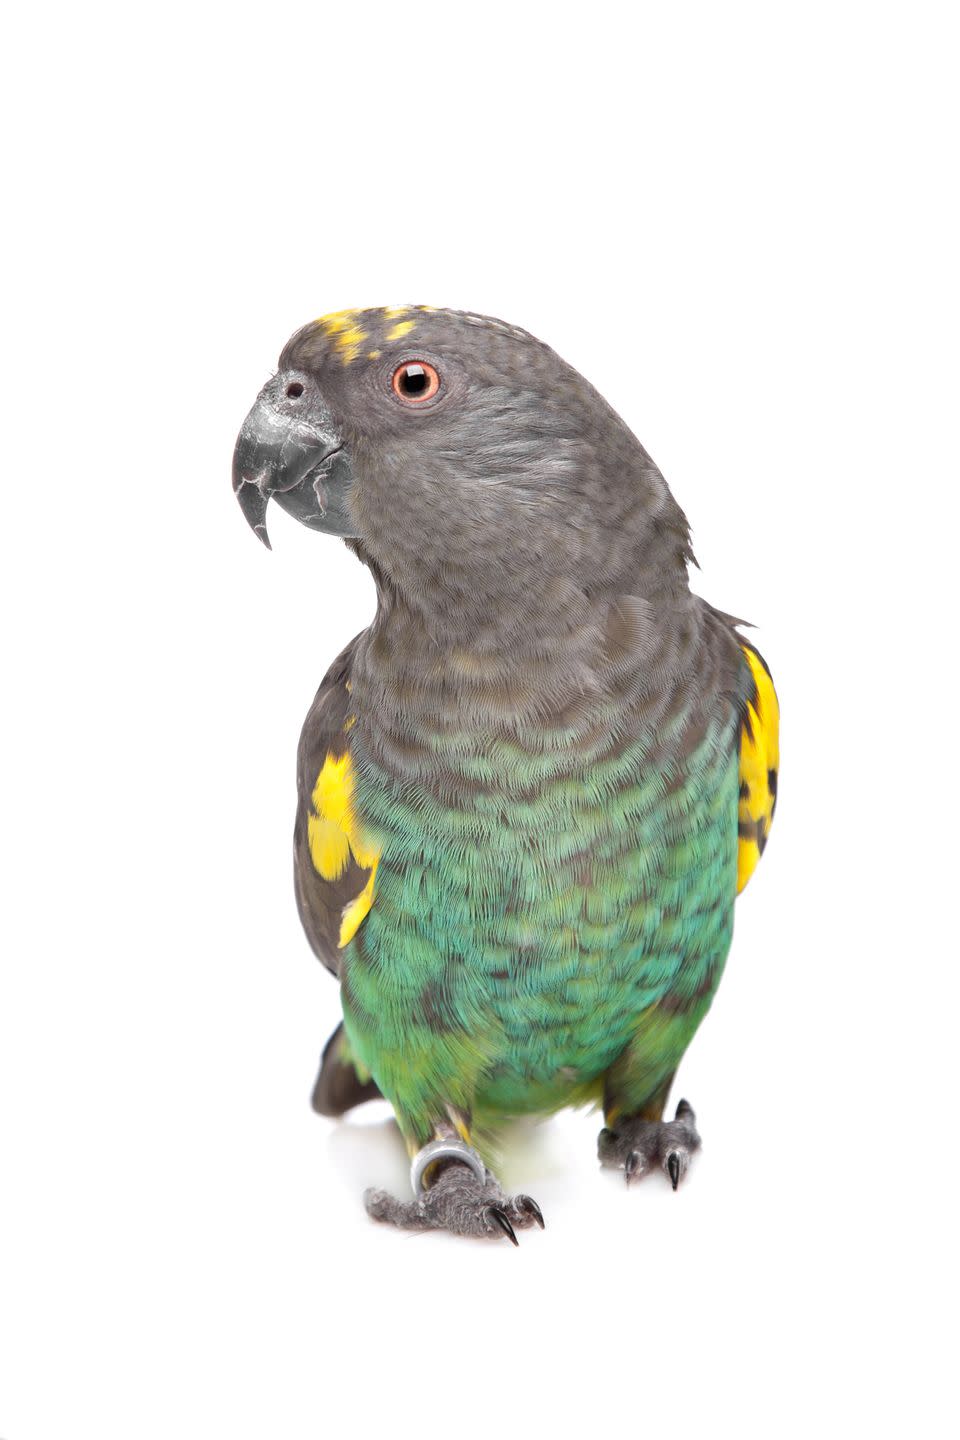 10) Meyer's Parrot